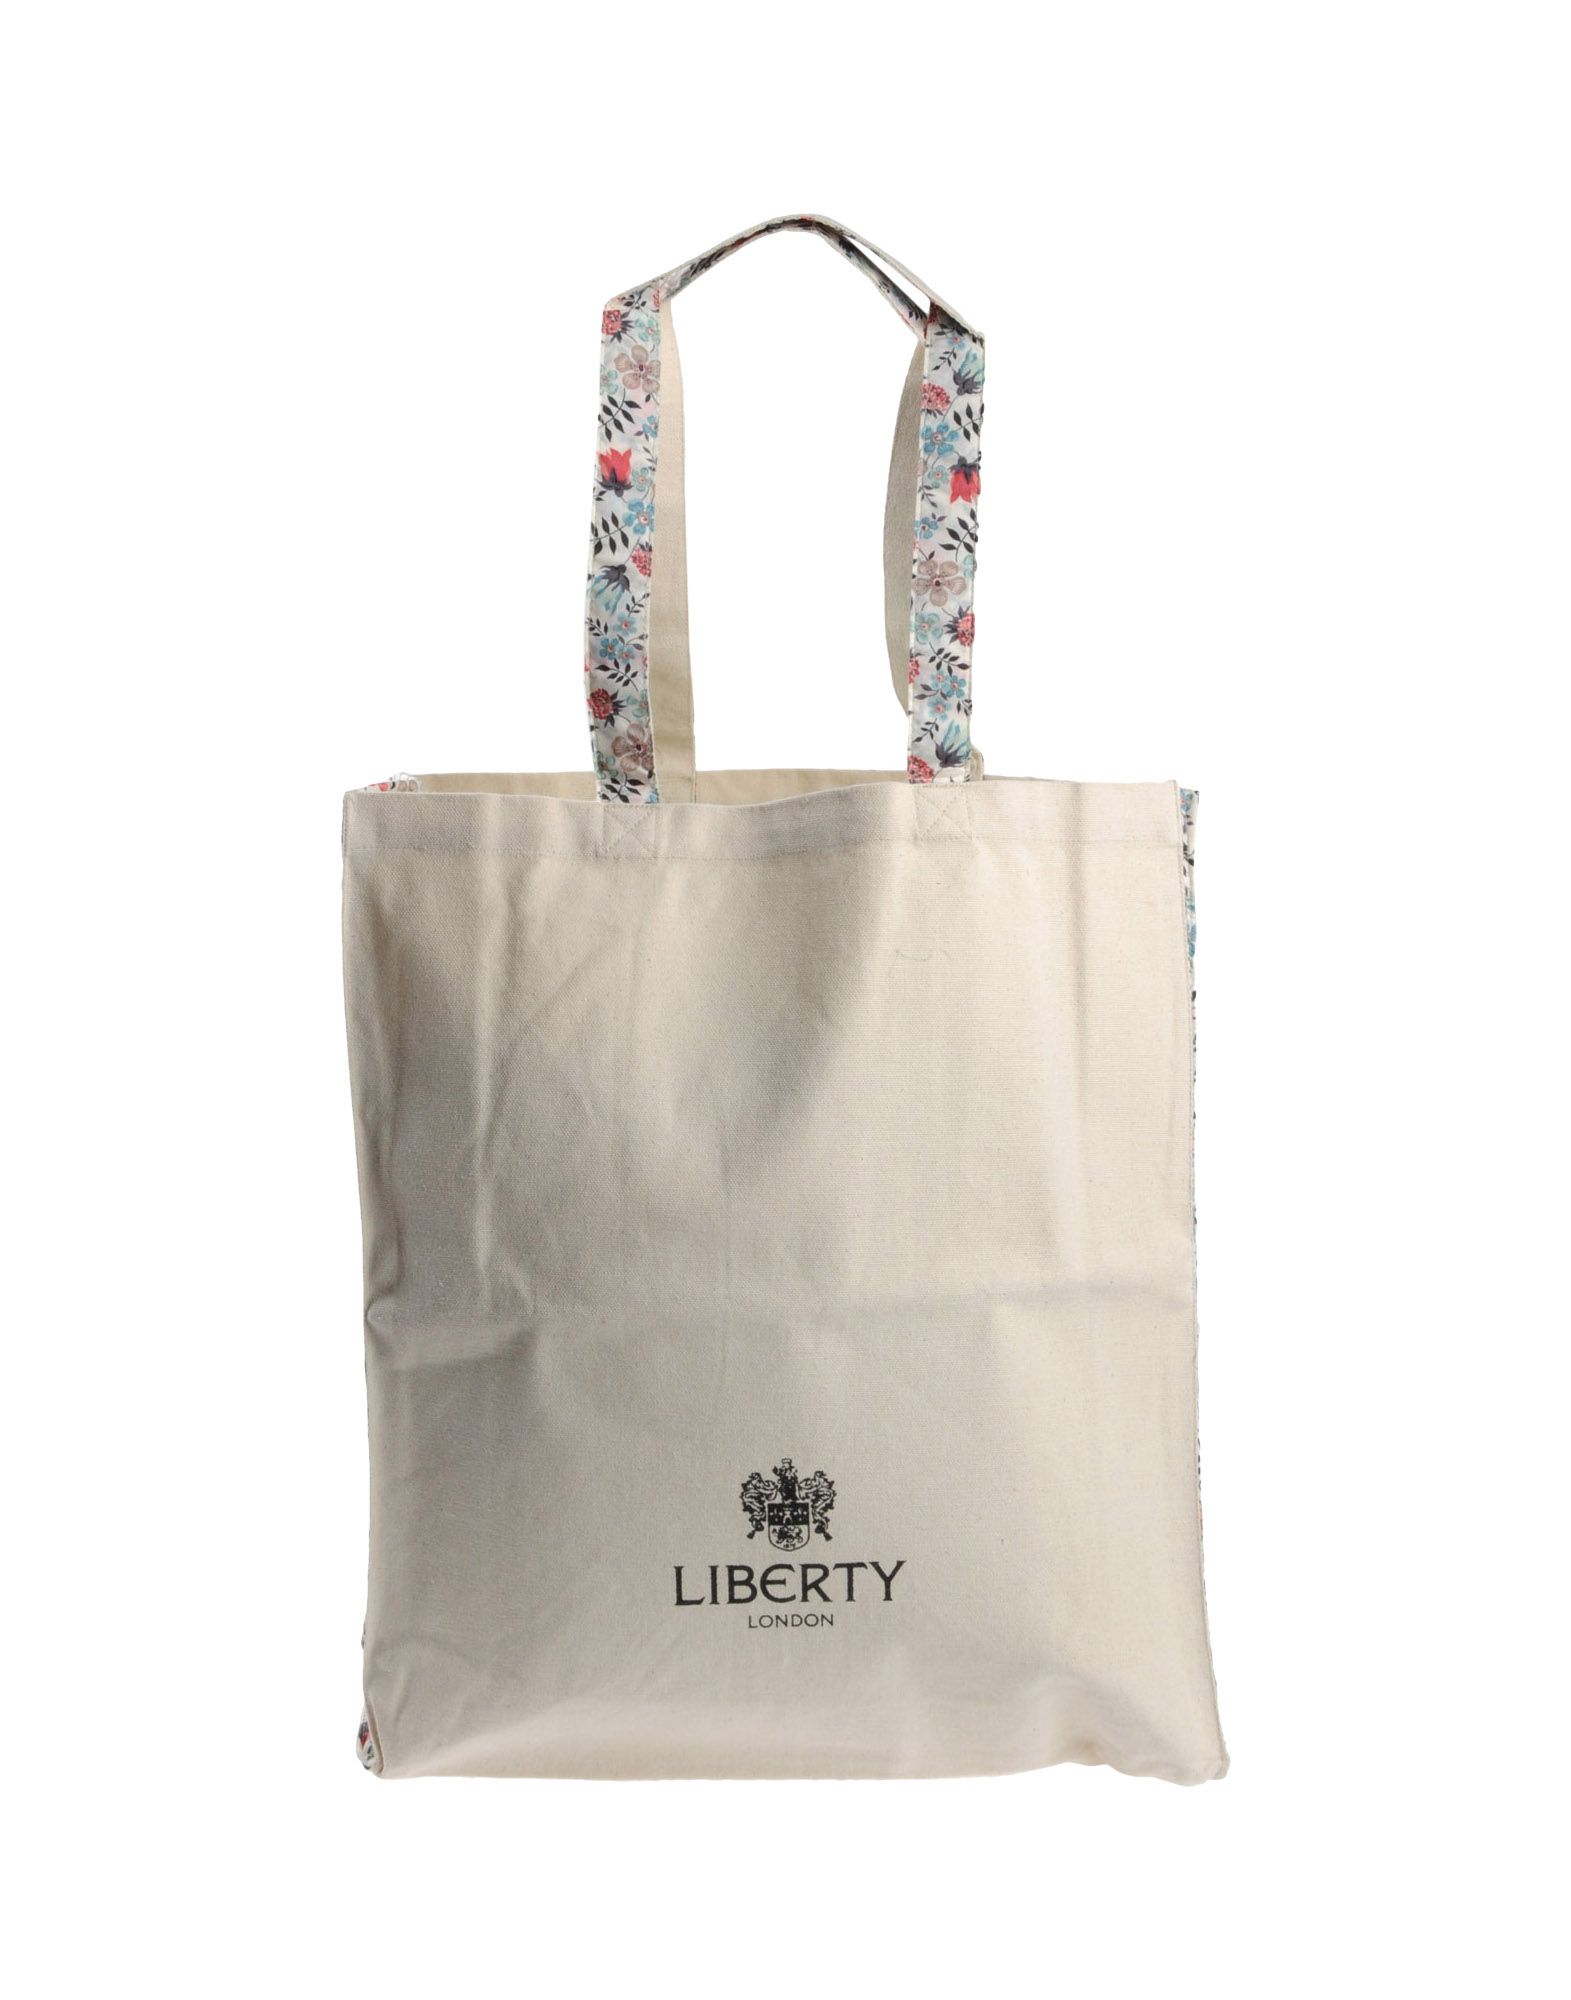 Foto liberty london bolsos grandes de tela
